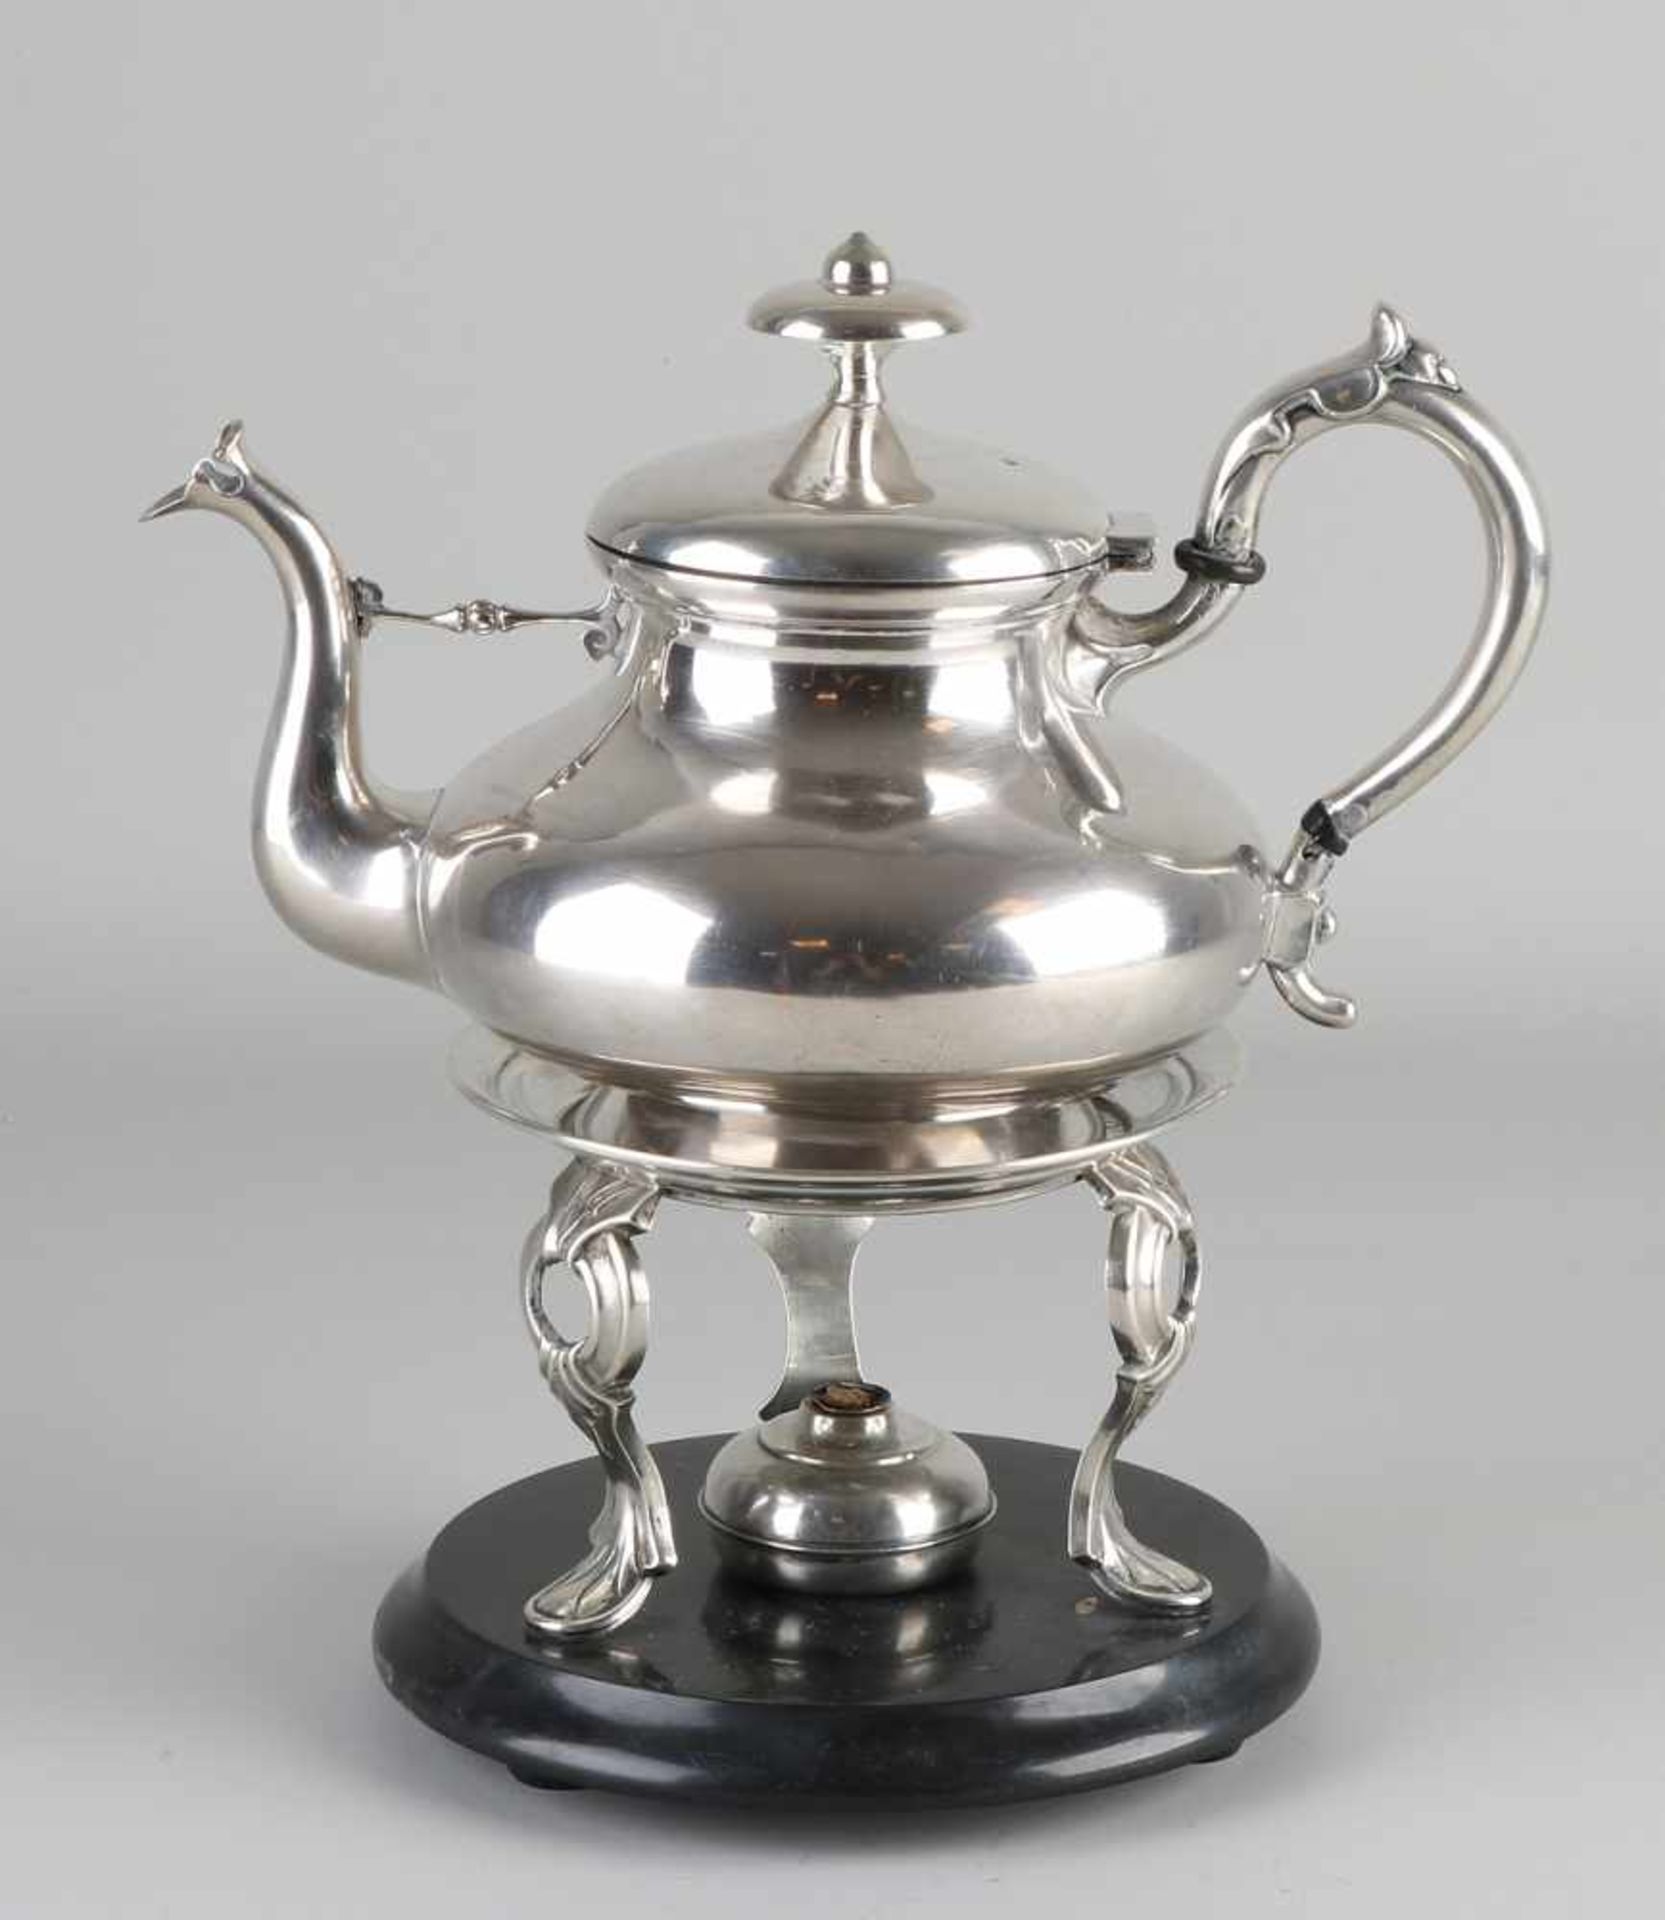 Silberne Teekanne mit Komfort, 833/000. Teekanne bauchiges Modell, mit Akanthusblatt am Griff und